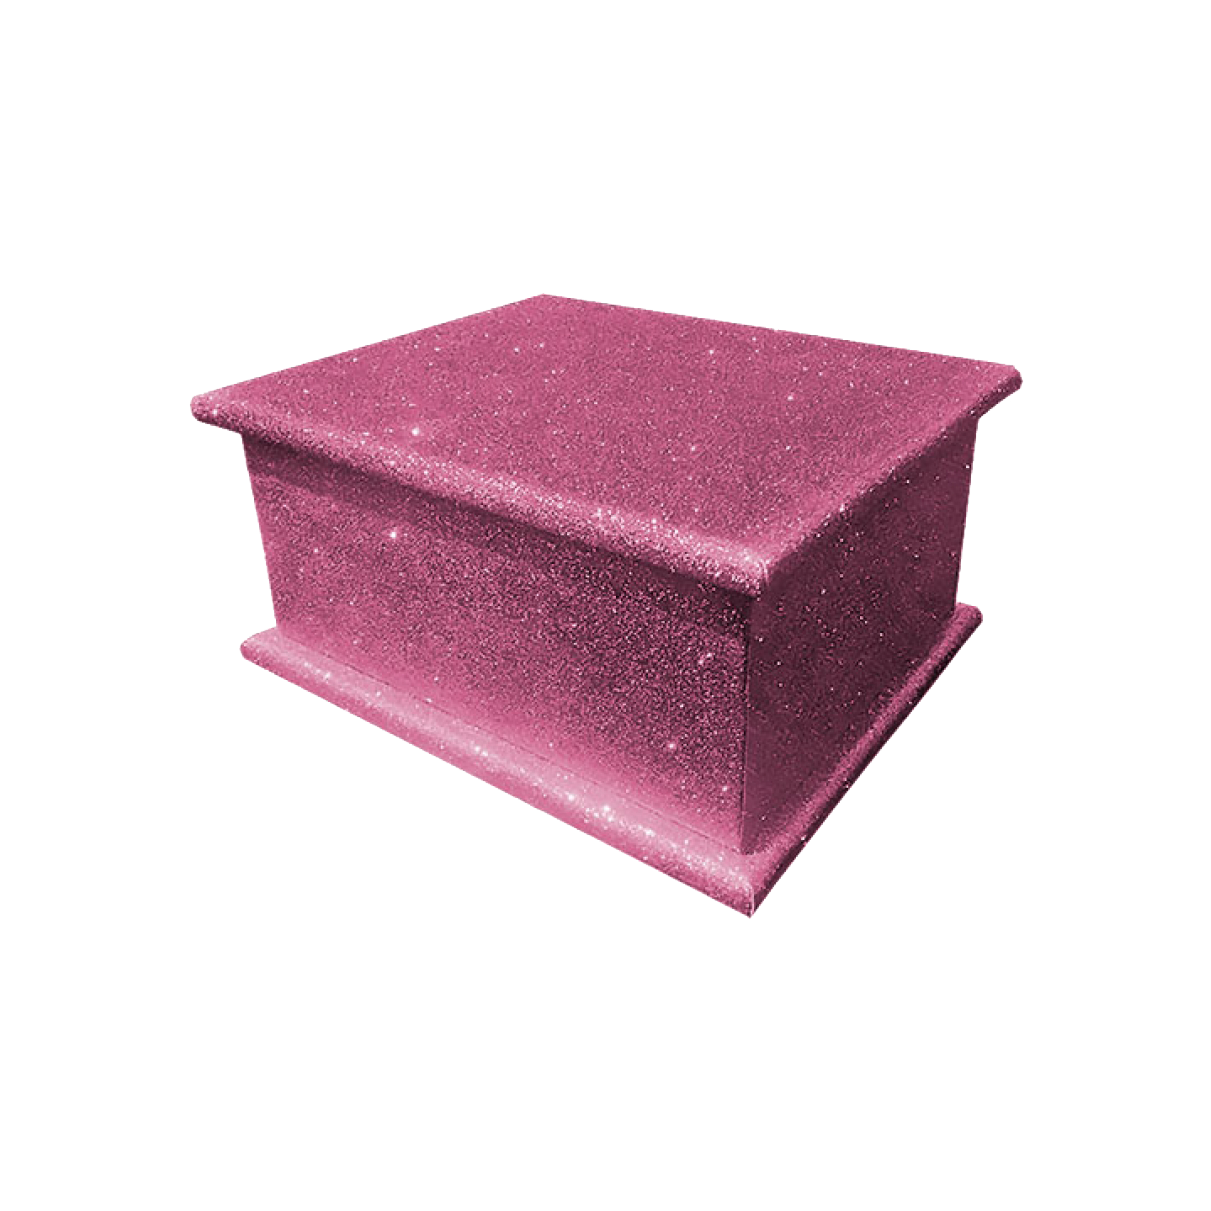 Glitter Adult Ashes Casket – Rose Pink